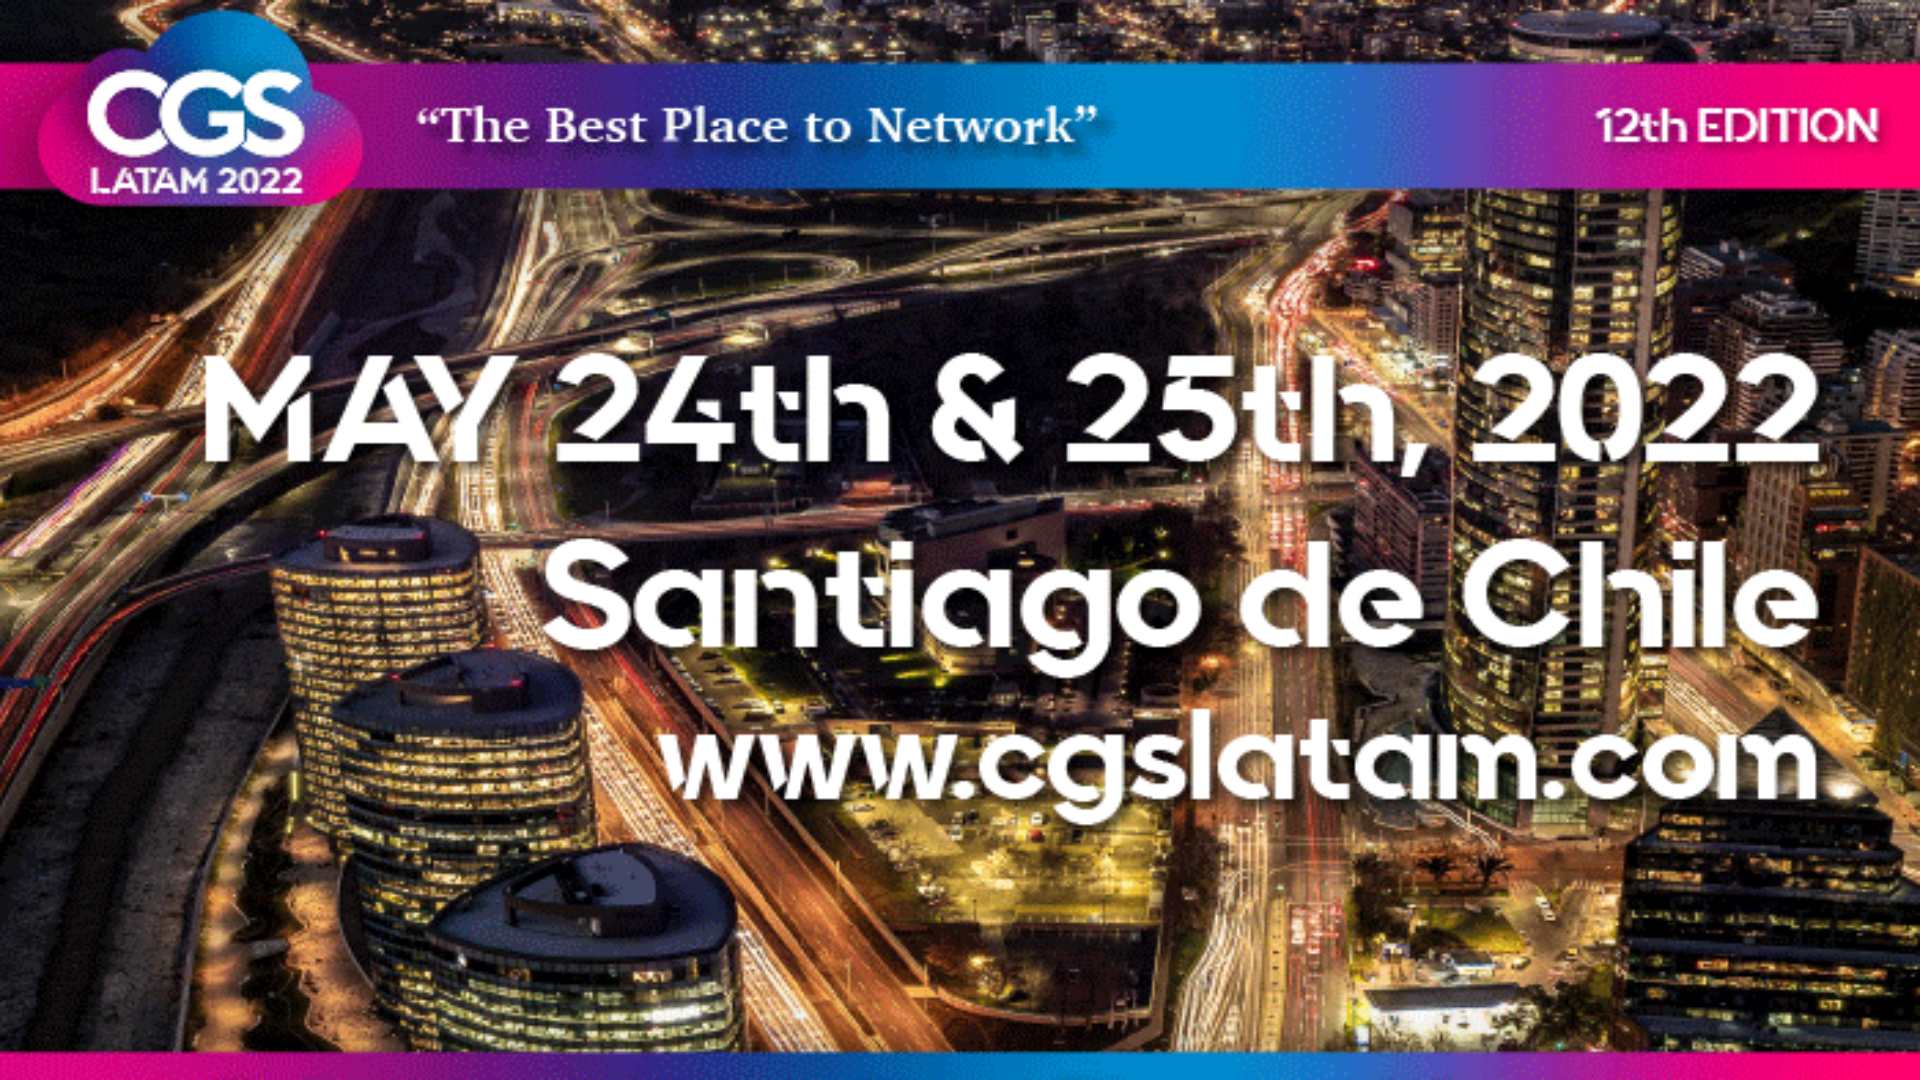 O CGS Latam Summit será realizado nos dias 24 e 25 de maio na cidade de Santiago do Chile em formato híbrido.